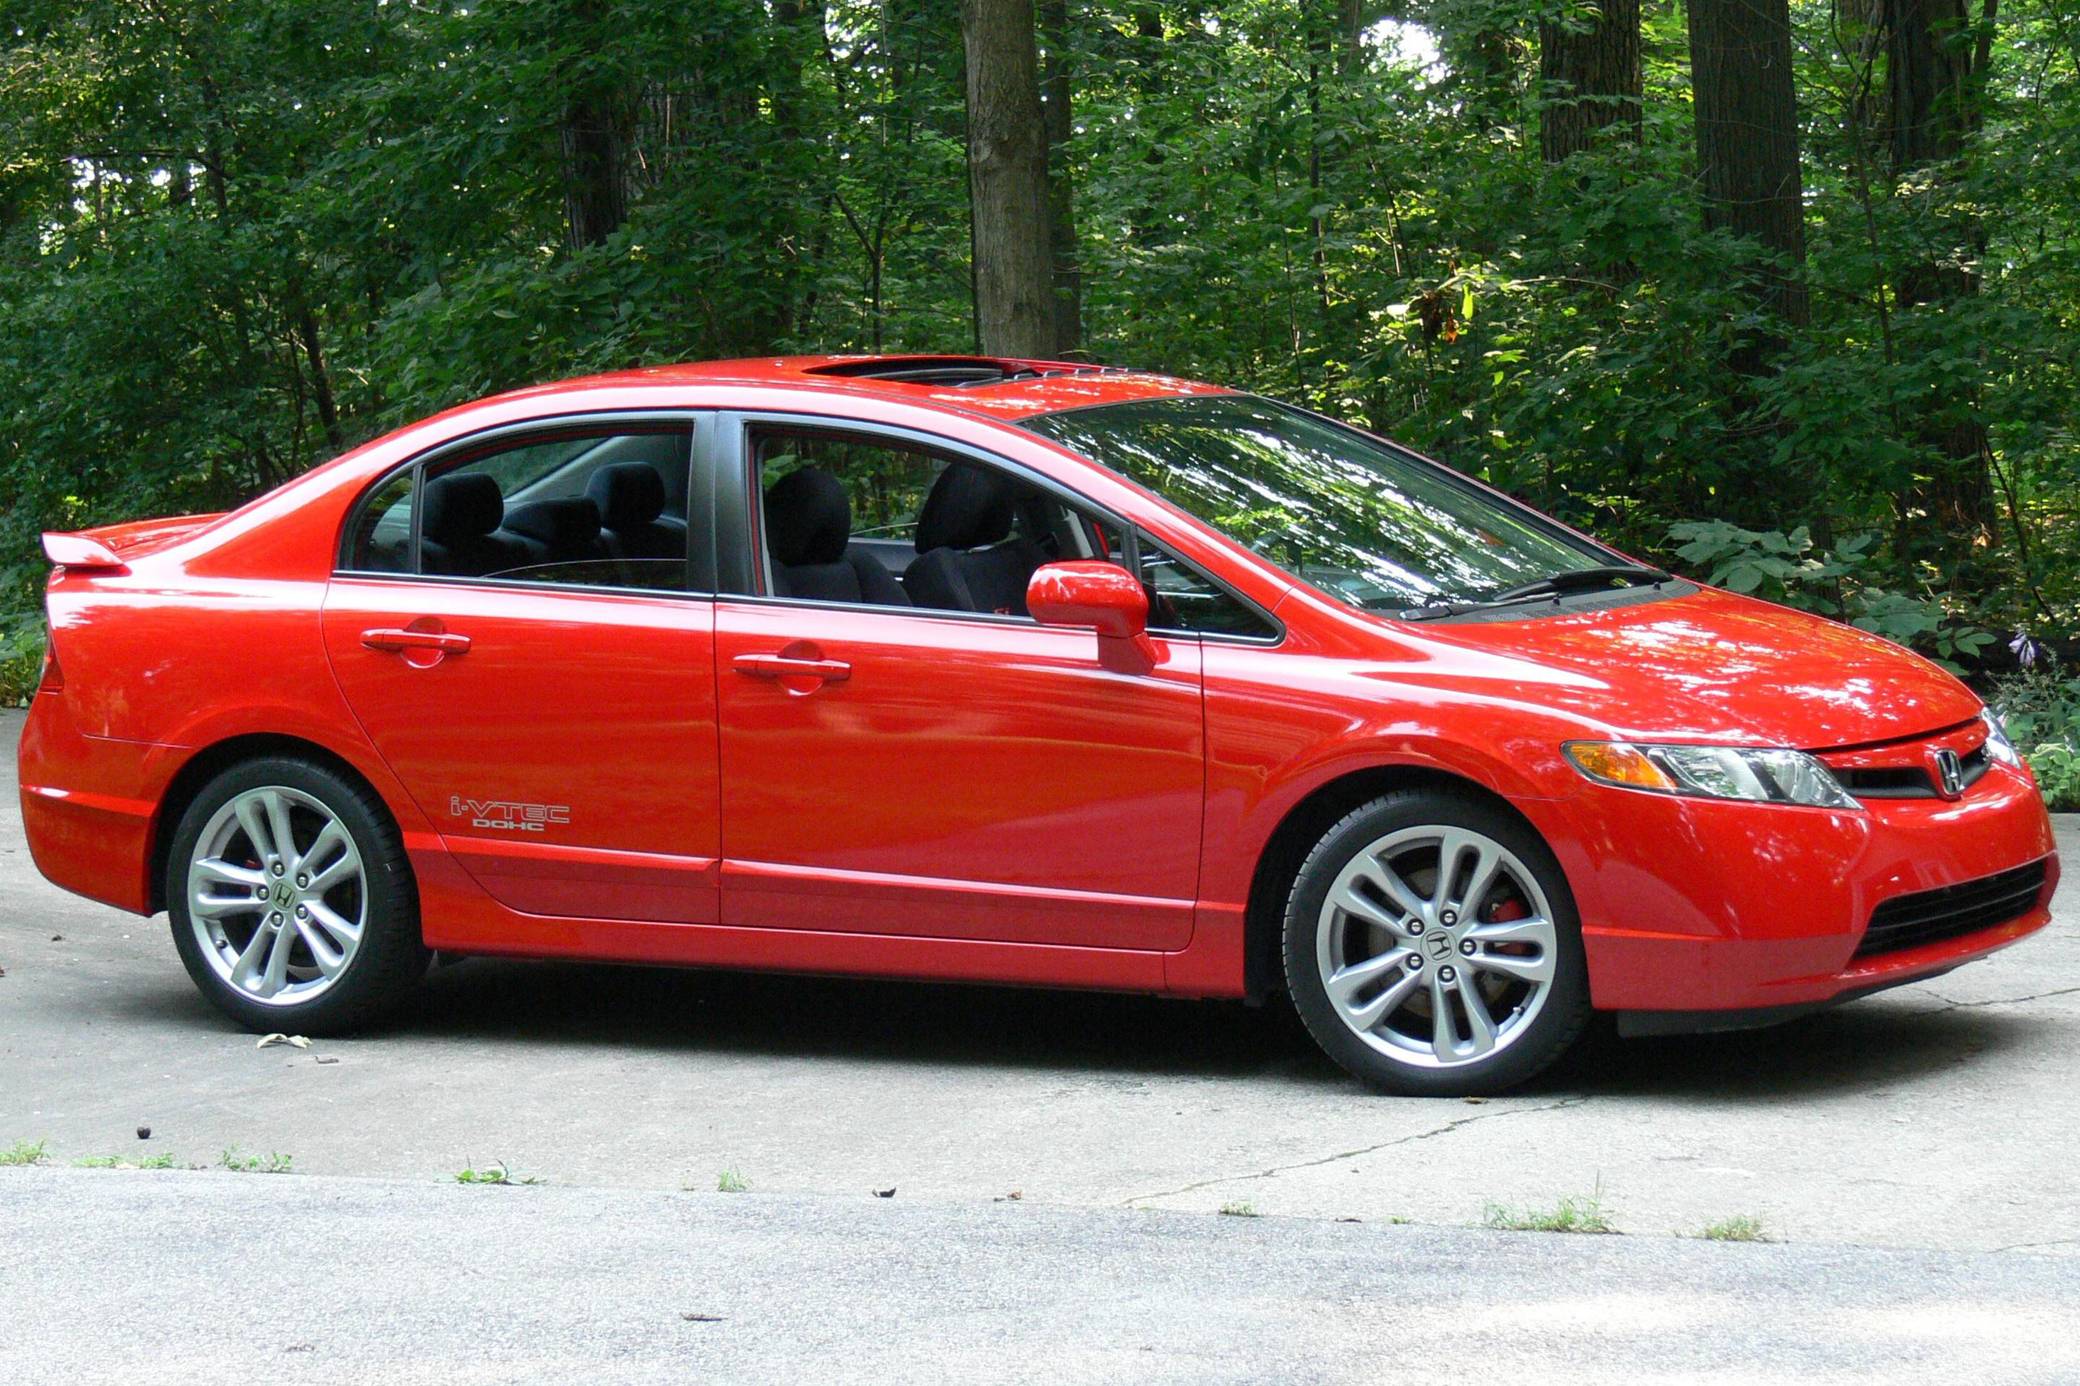 2007 Honda Civic Si Sedan For Sale Cars And Bids